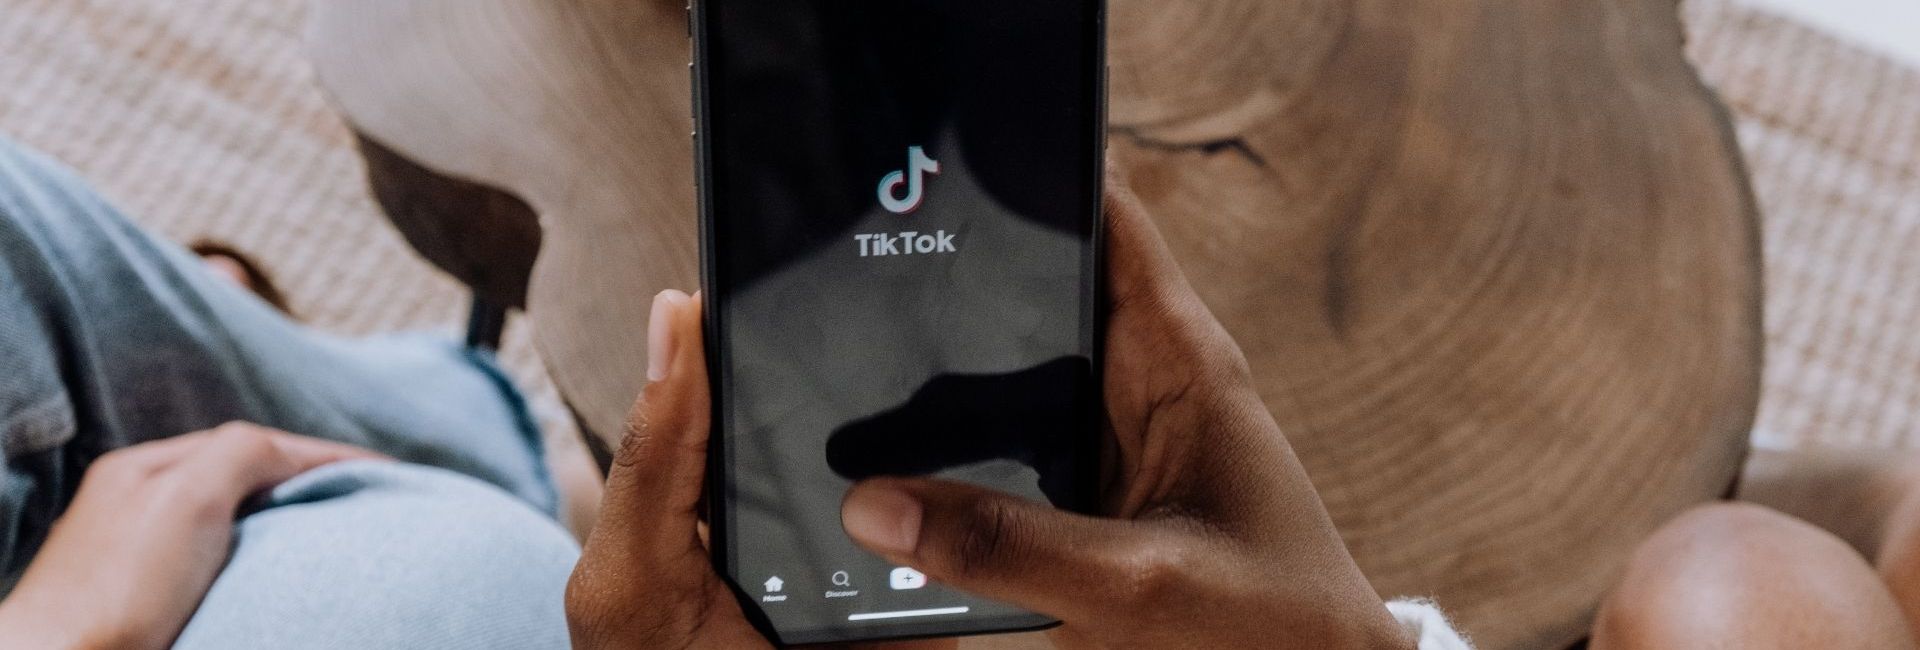 Personne ouvrant l'application TikTok sur son smartphone